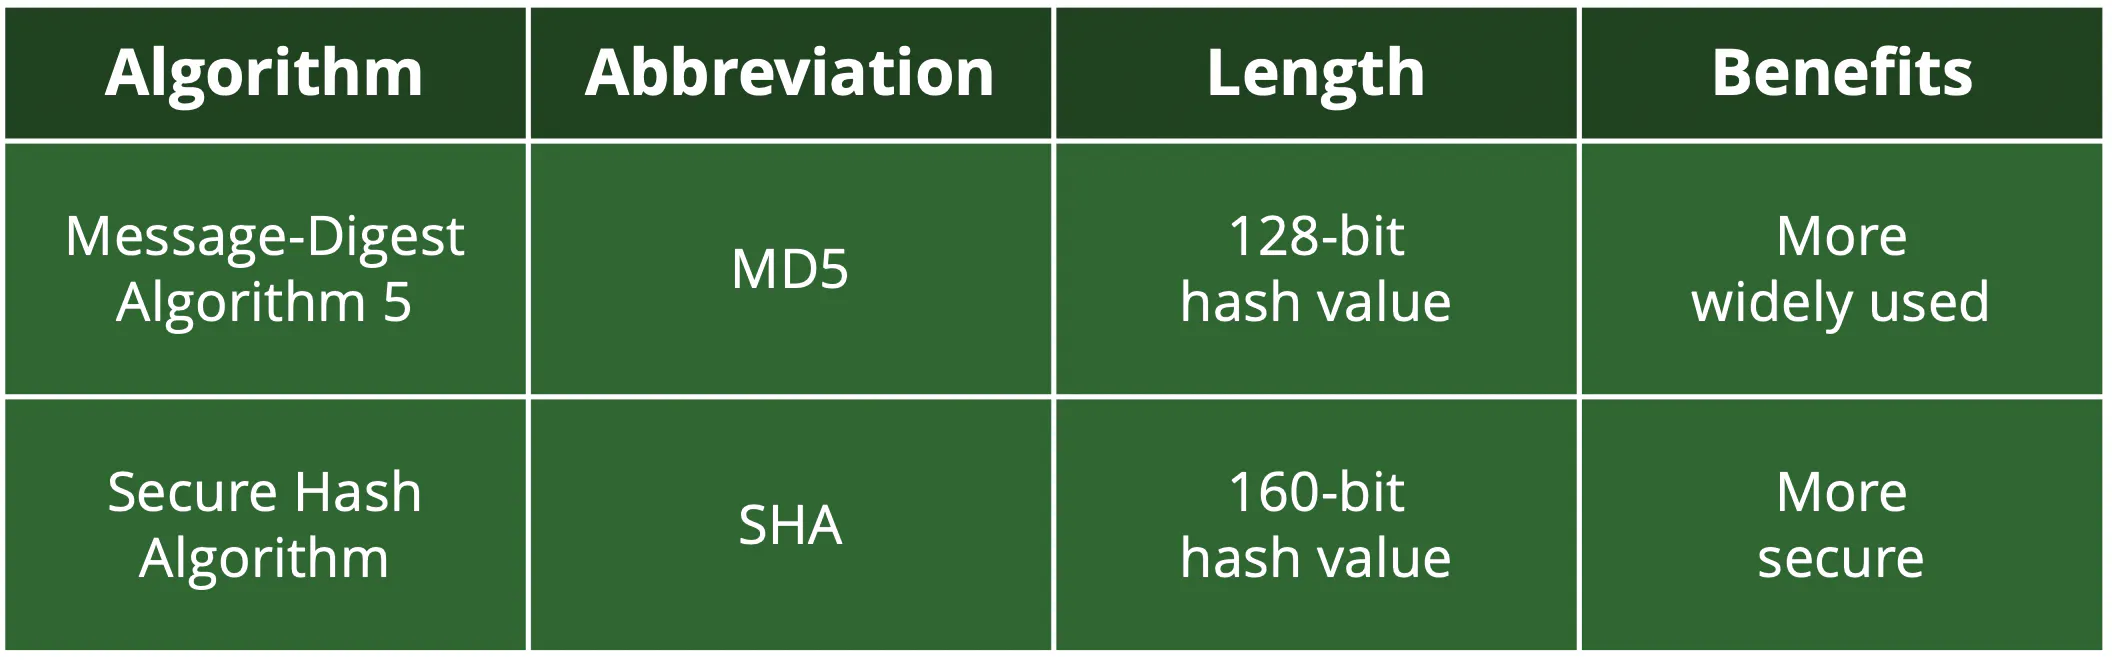 Dois tipos de algoritmos de hashed são MD5 e SHA, enquanto o primeiro é mais amplamente utilizado, o segundo é mais seguro